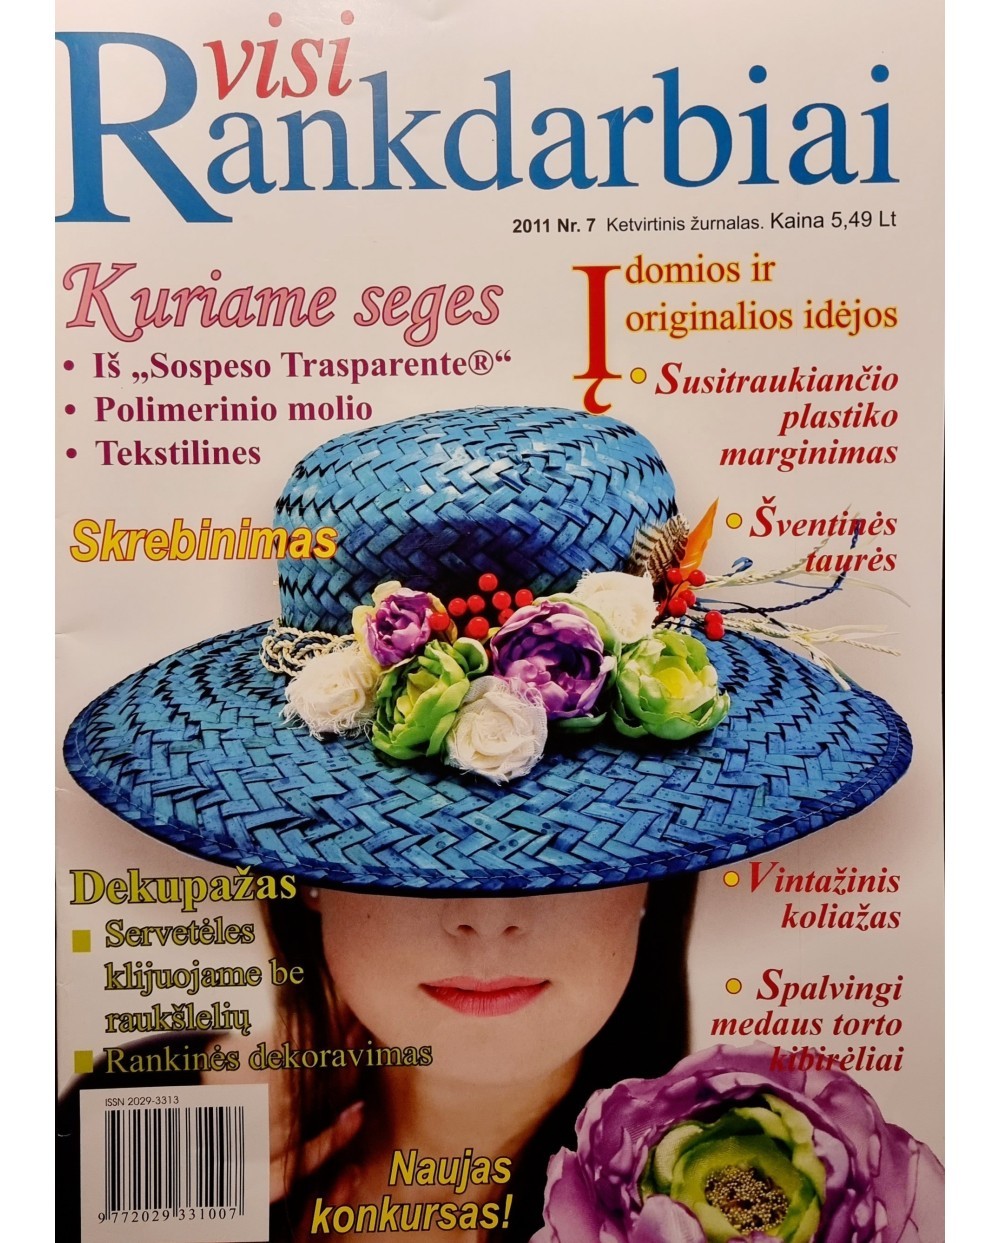 Žurnalas "Visi rankdarbiai", 2011 m., Nr. 7, 1 vnt.